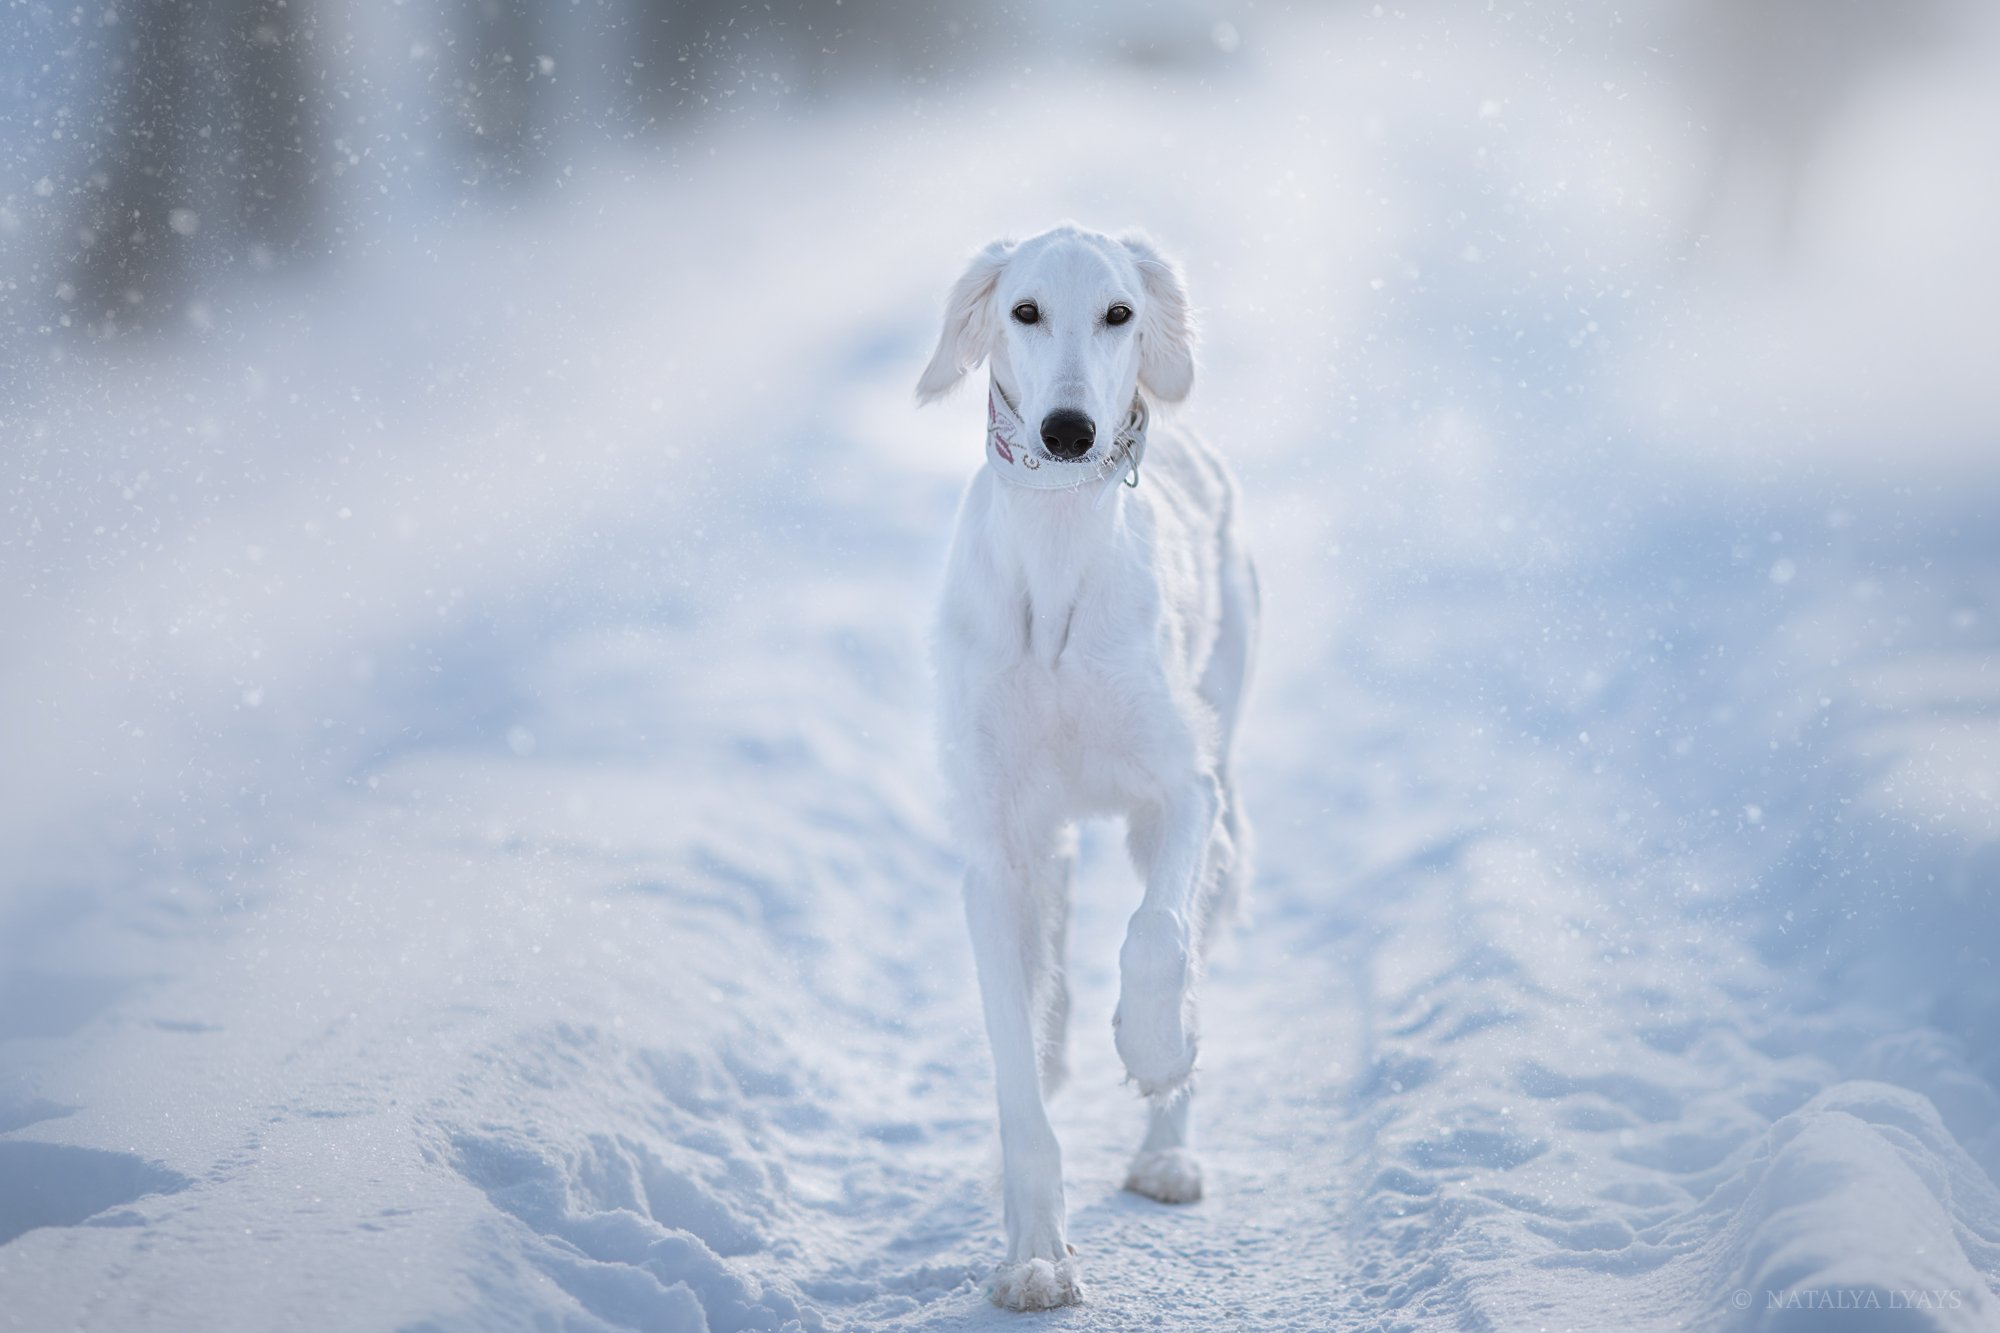 собака, животные, dog, animal, снег, зима, winter, snow, white, Наталья Ляйс